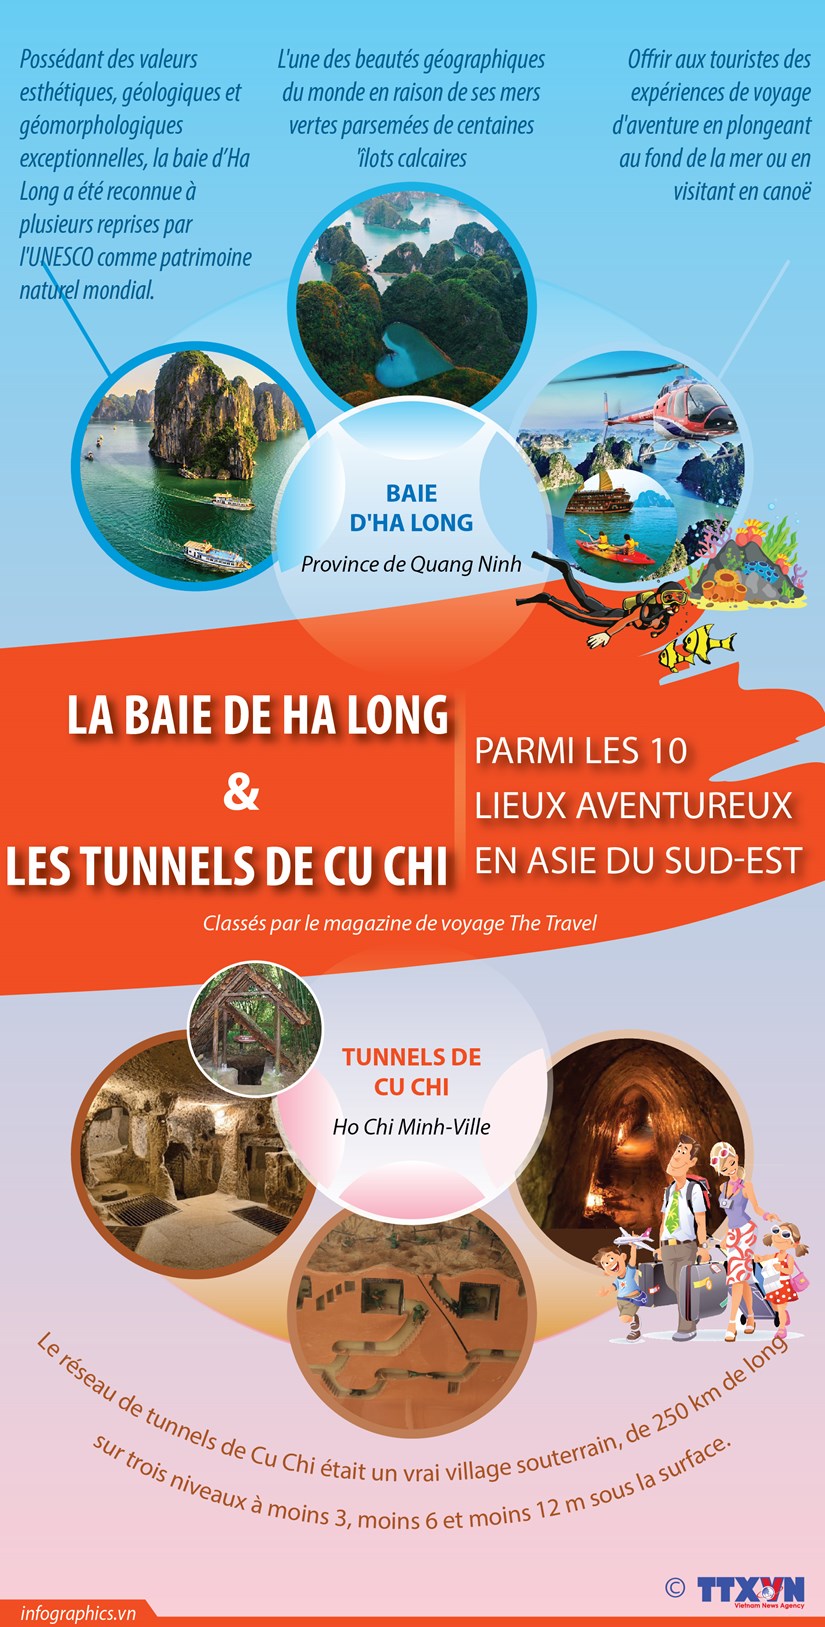 La baie de Ha Long et les tunnels de Cu Chi parmi les 10 lieux aventureux en Asie du Sud-Est hinh anh 1